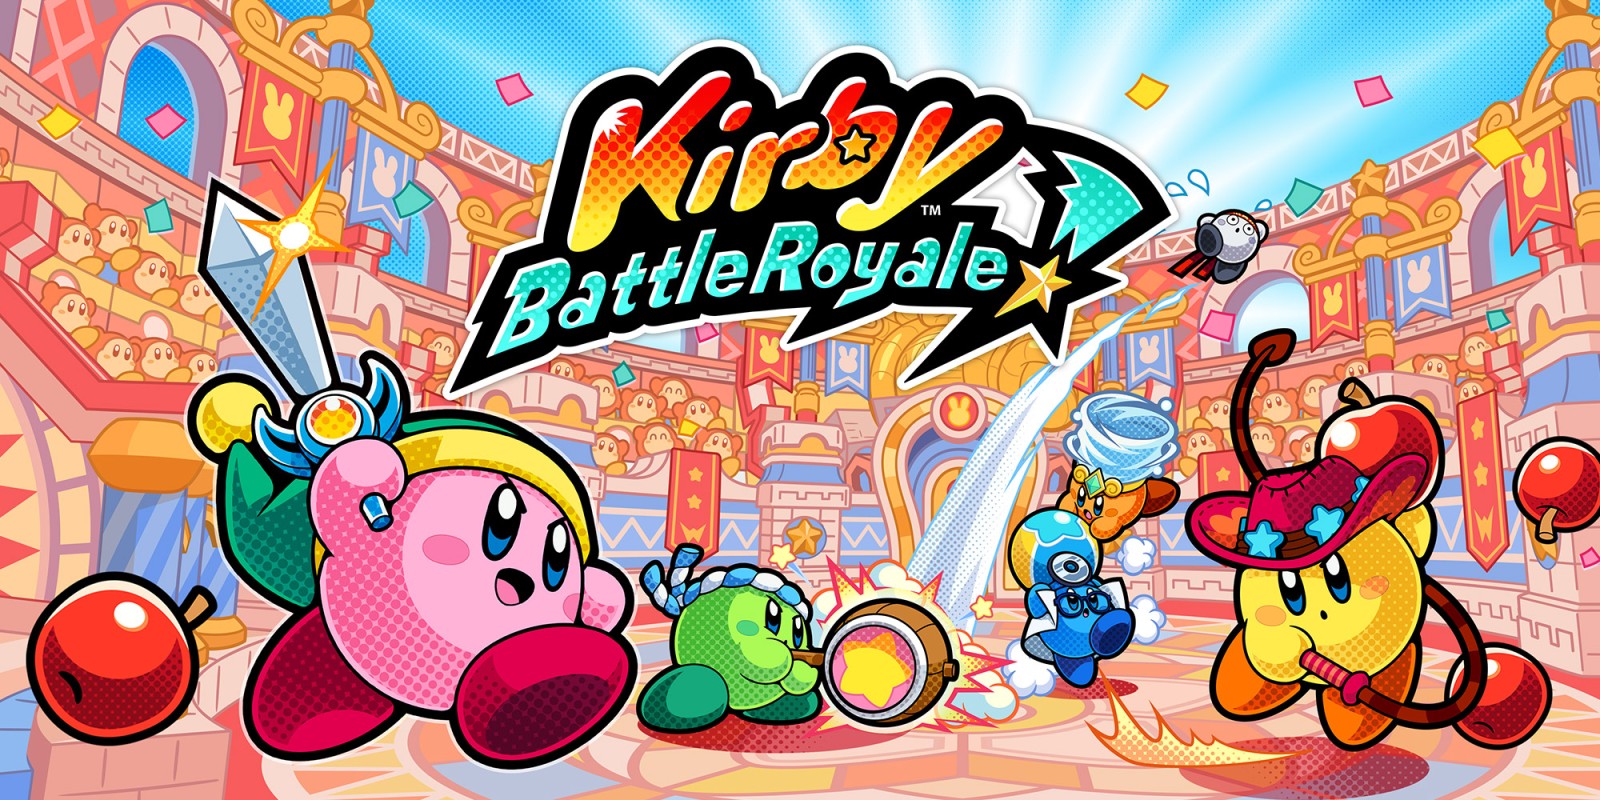 H2x1_3DS_KirbyBattleRoyale_image1600w